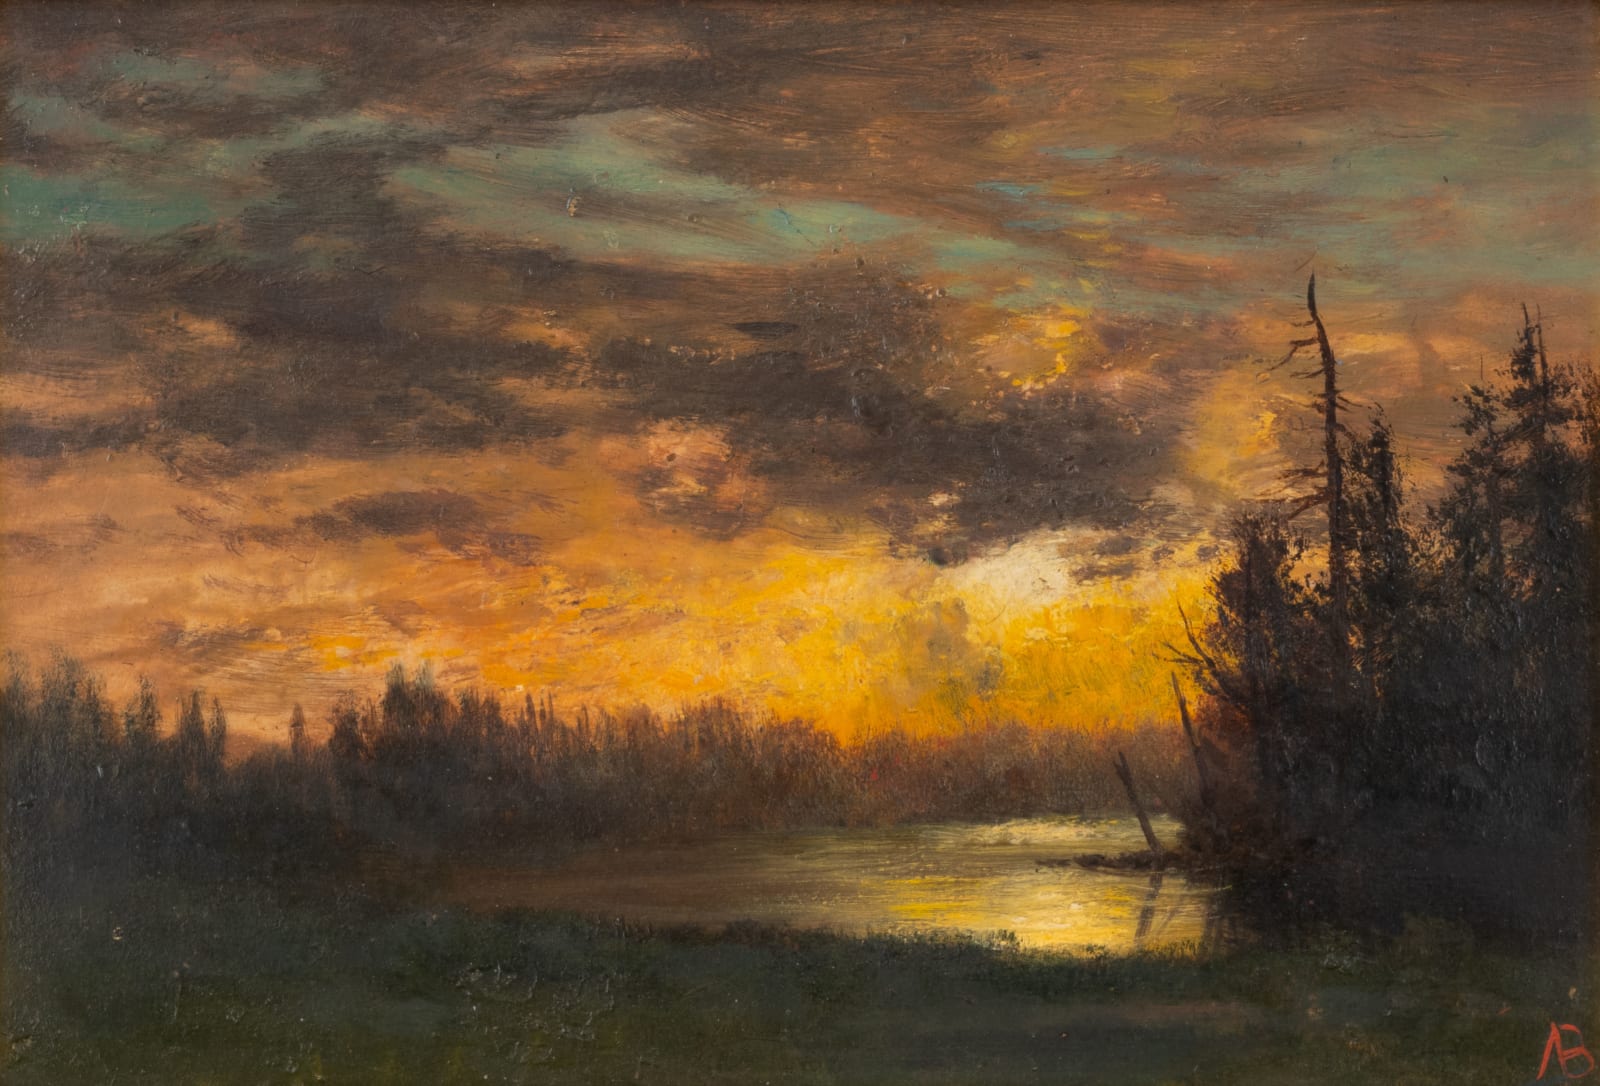 Albert Bierstadt, Fiery Landscape, undated